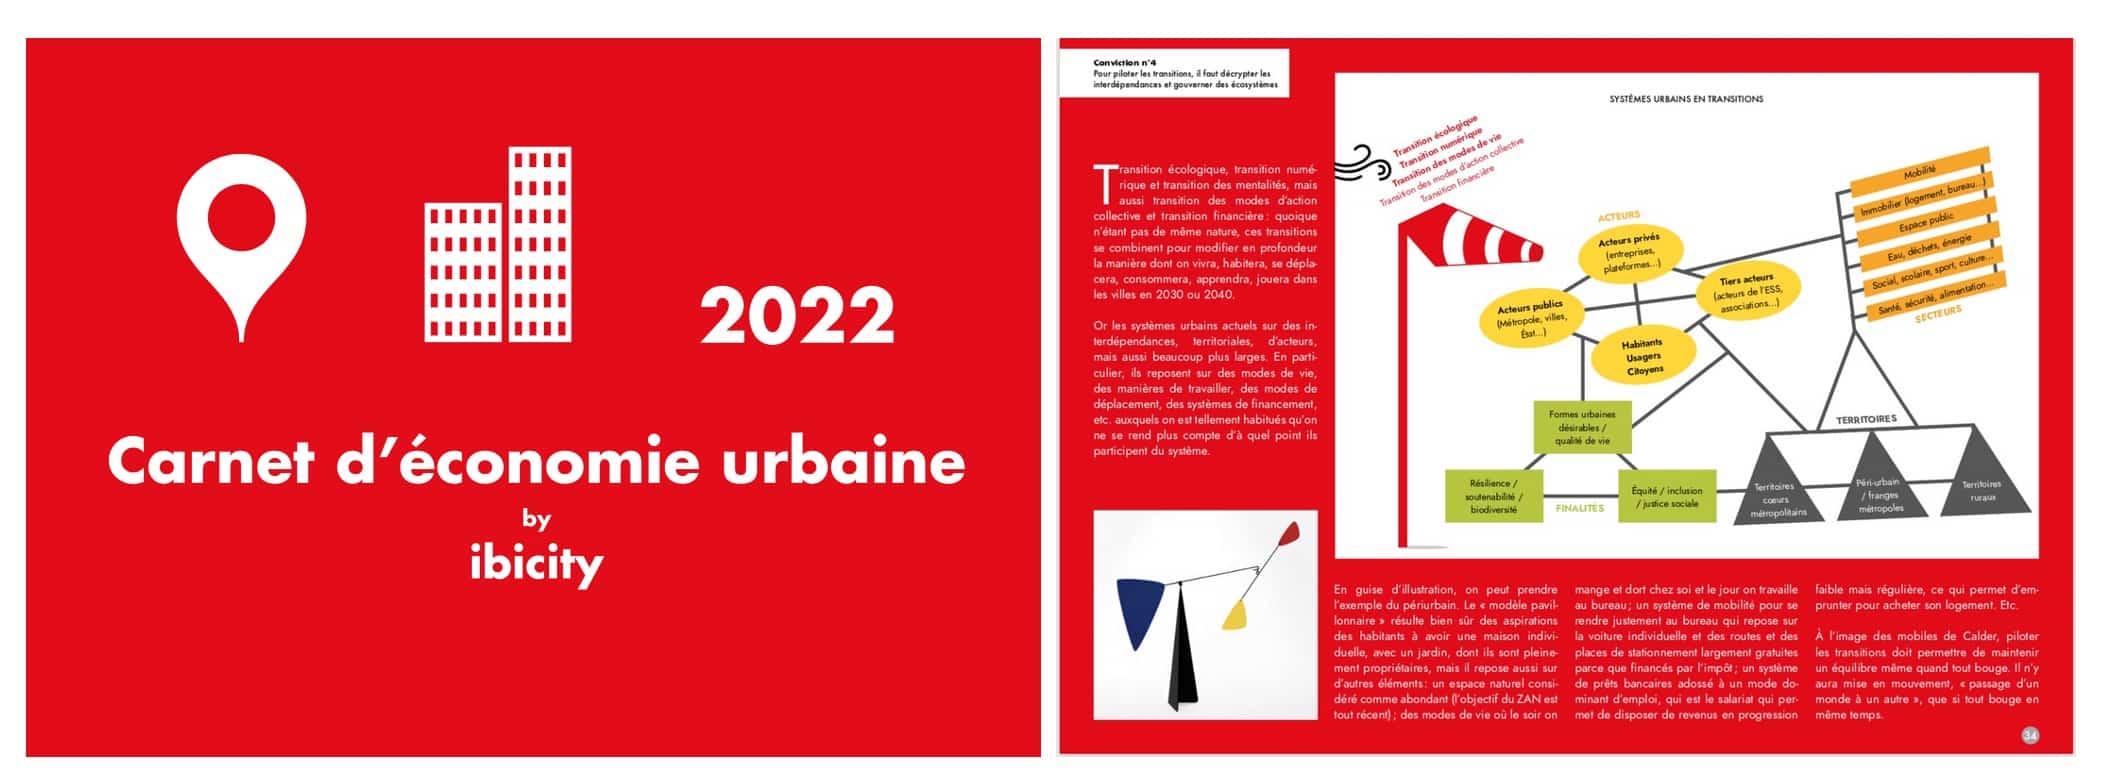 carnet d'économie urbaine 2022 pdf ibicity